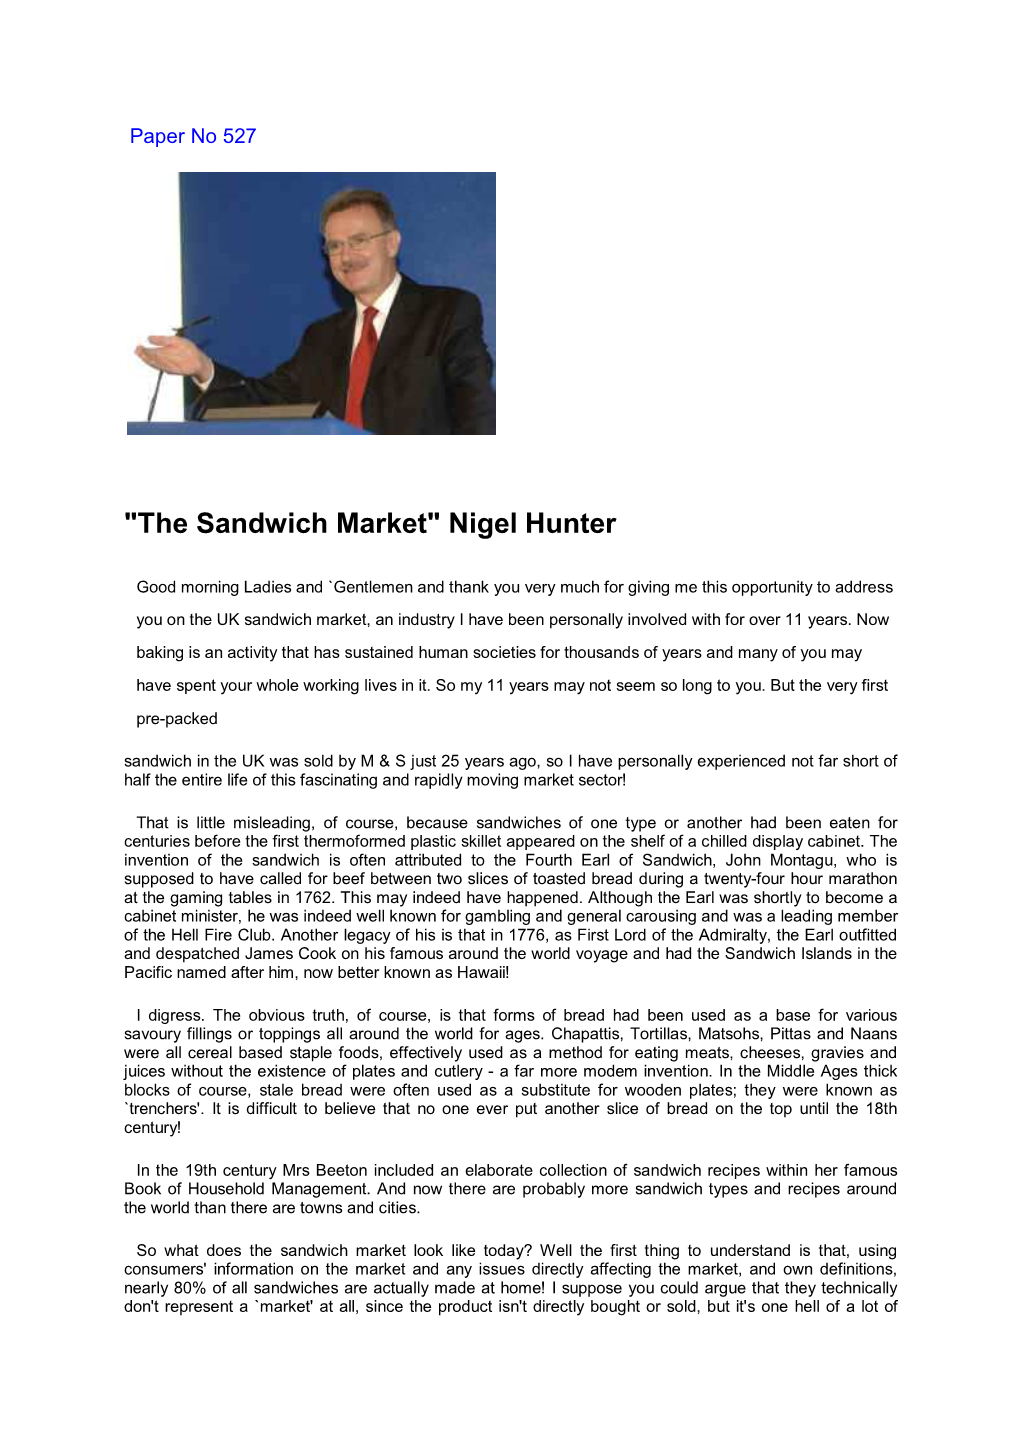 The Sandwich Market" Nigel Hunter